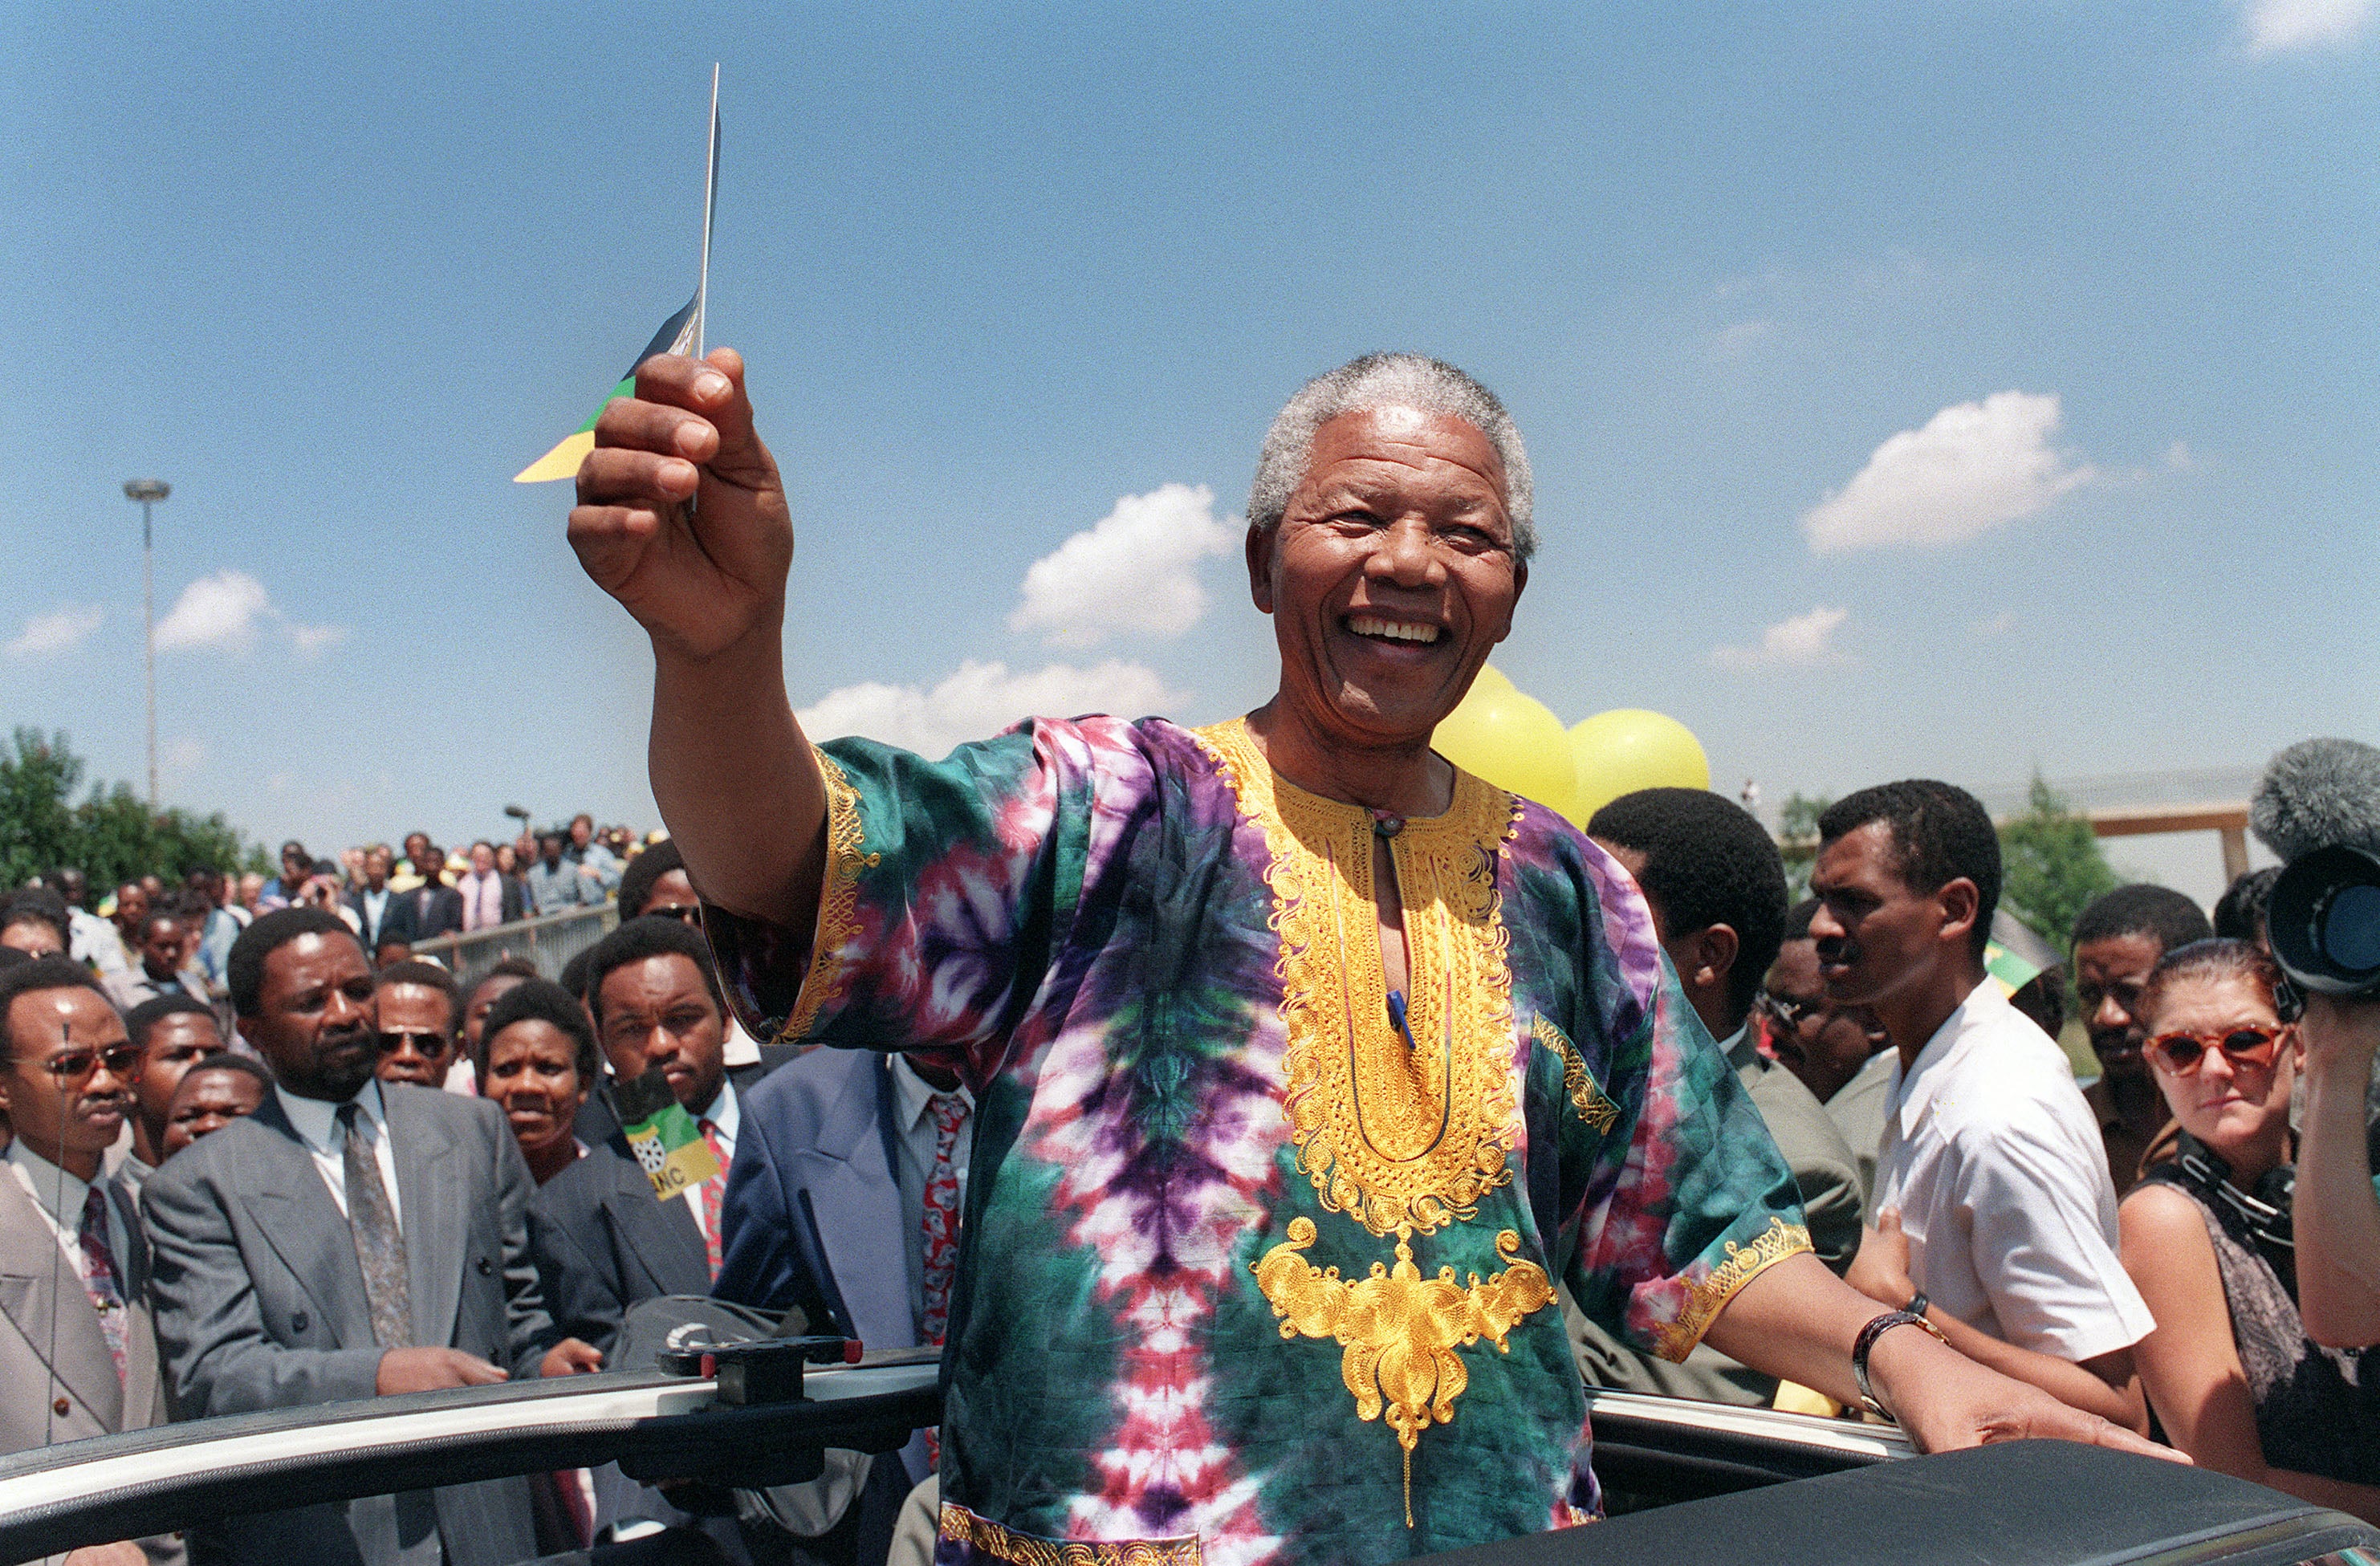 Mandela mentre saluta i suoi sostenitori durante una riunione elettorale, il 29 gennaio 1994 a Johannesburg. Nello stesso anno i sudafricani voteranno alle prime elezioni generali democratiche e multirazziali del paese